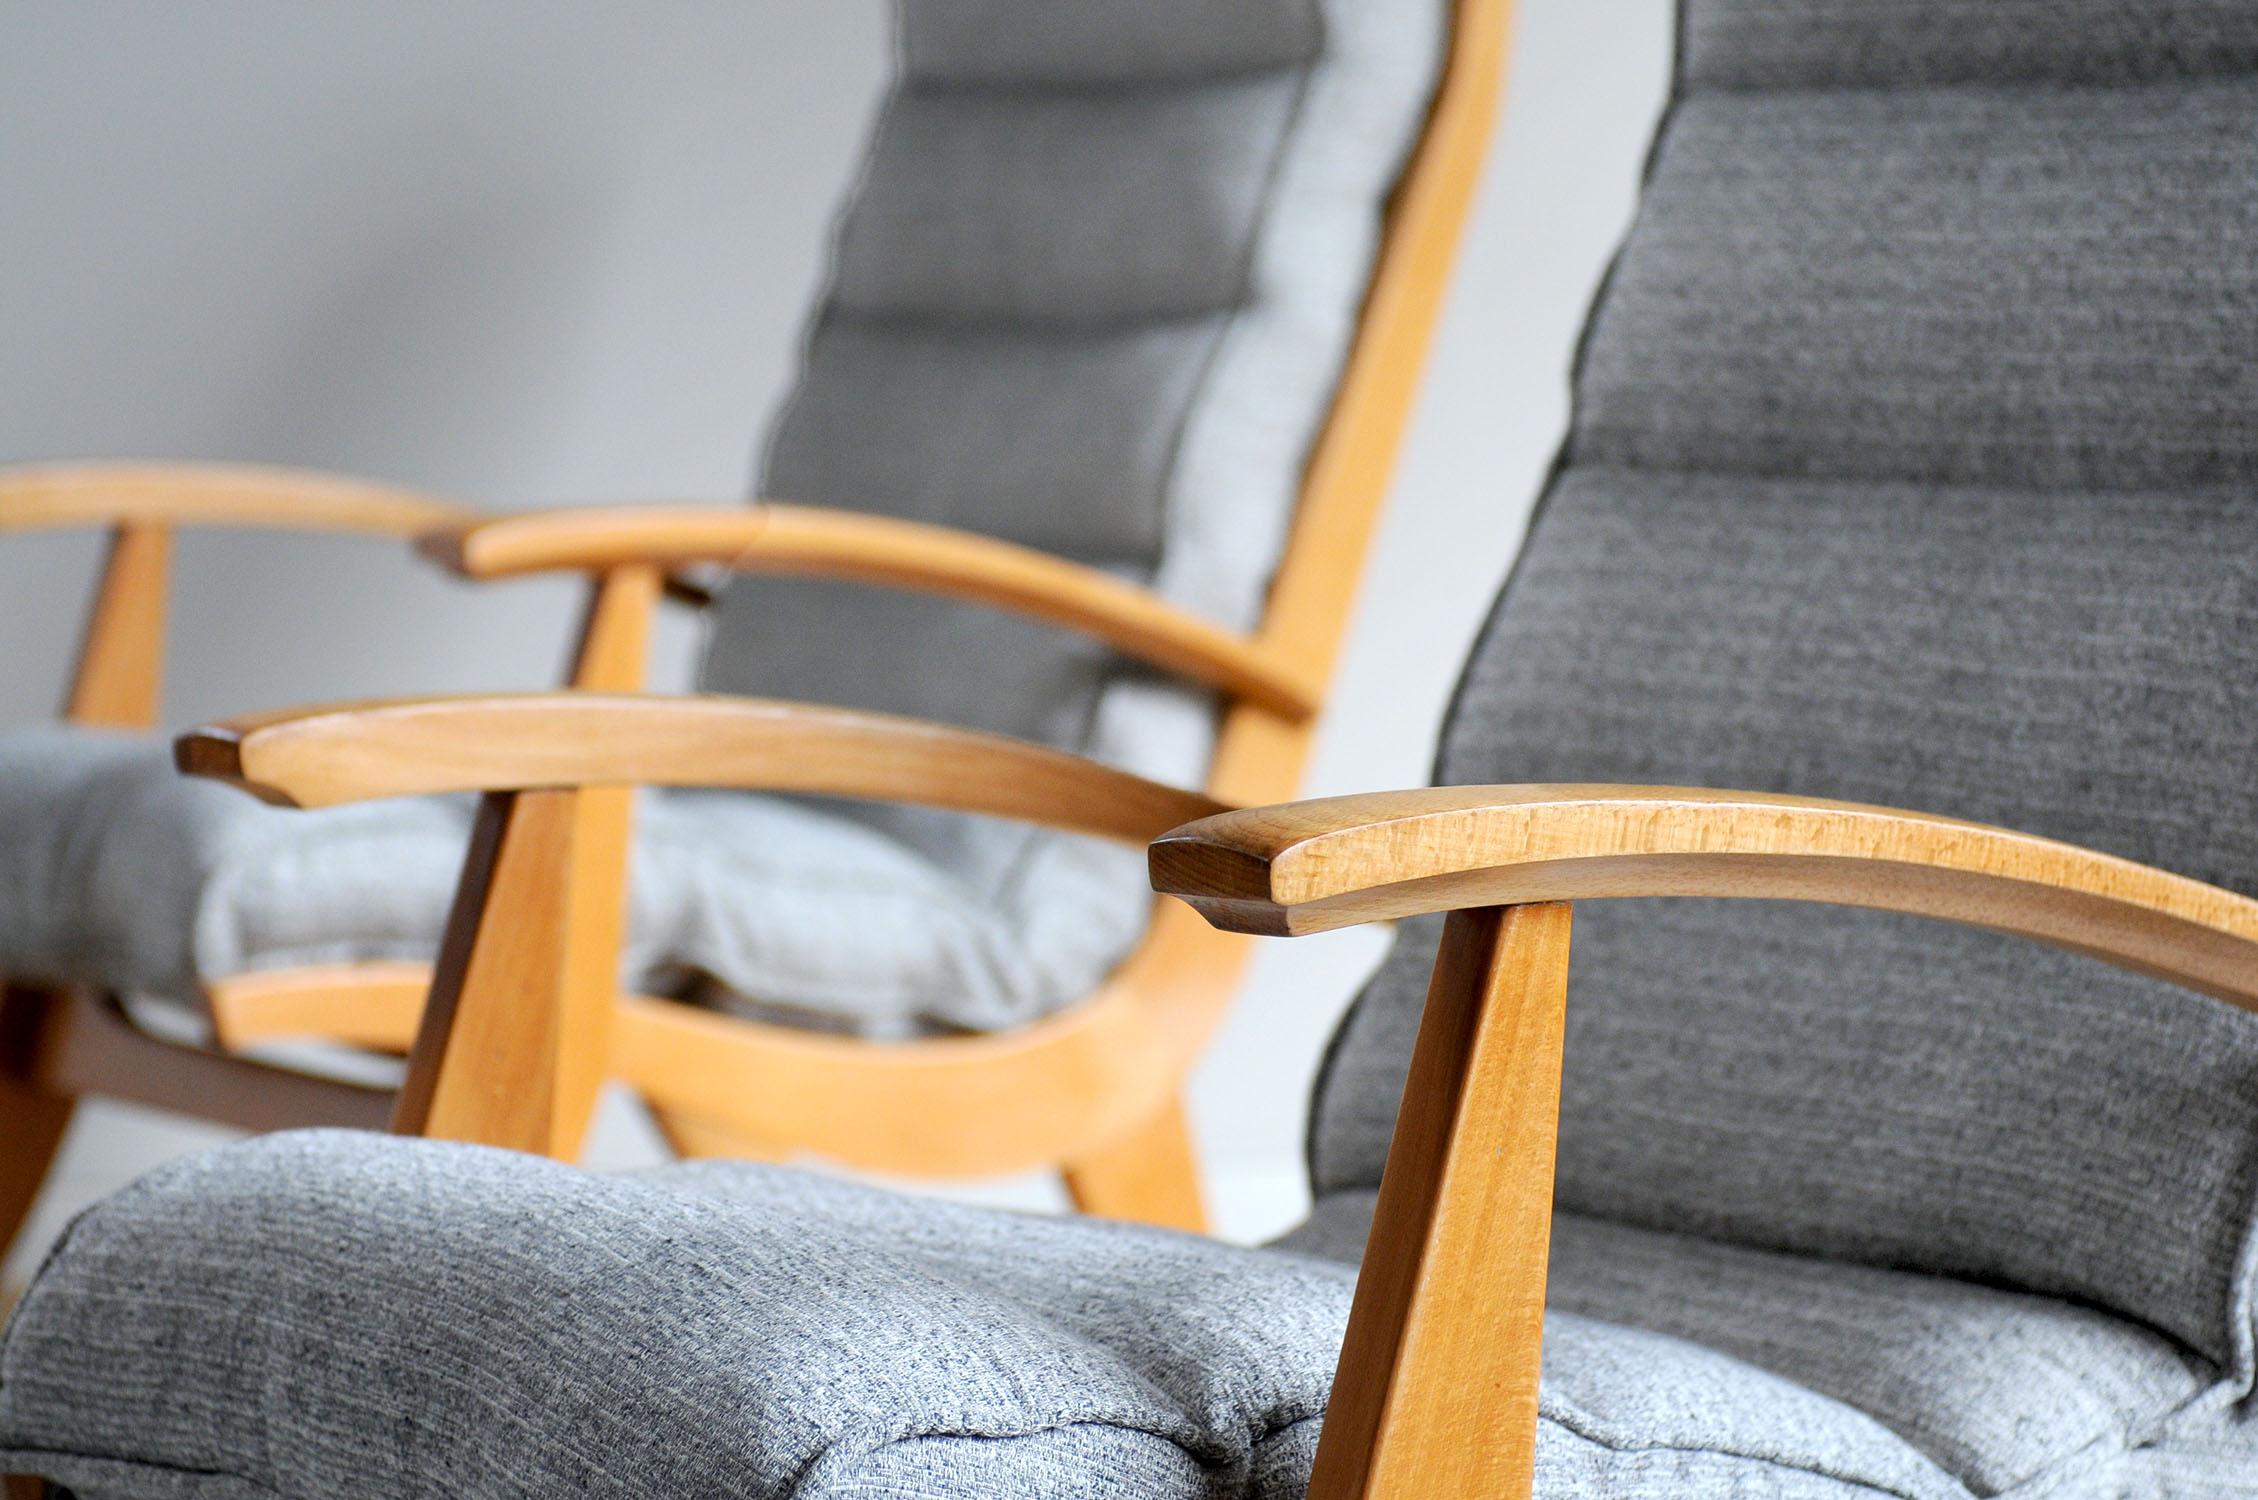 Superbe paire de fauteuils FS 123 de la marque française Free-Span éditée en 1954. La structure en hêtre blond a un design incurvé, le tissu moucheté de blanc et de gris est rembourré de kapok. Le confort exceptionnel de ces sièges est assuré par